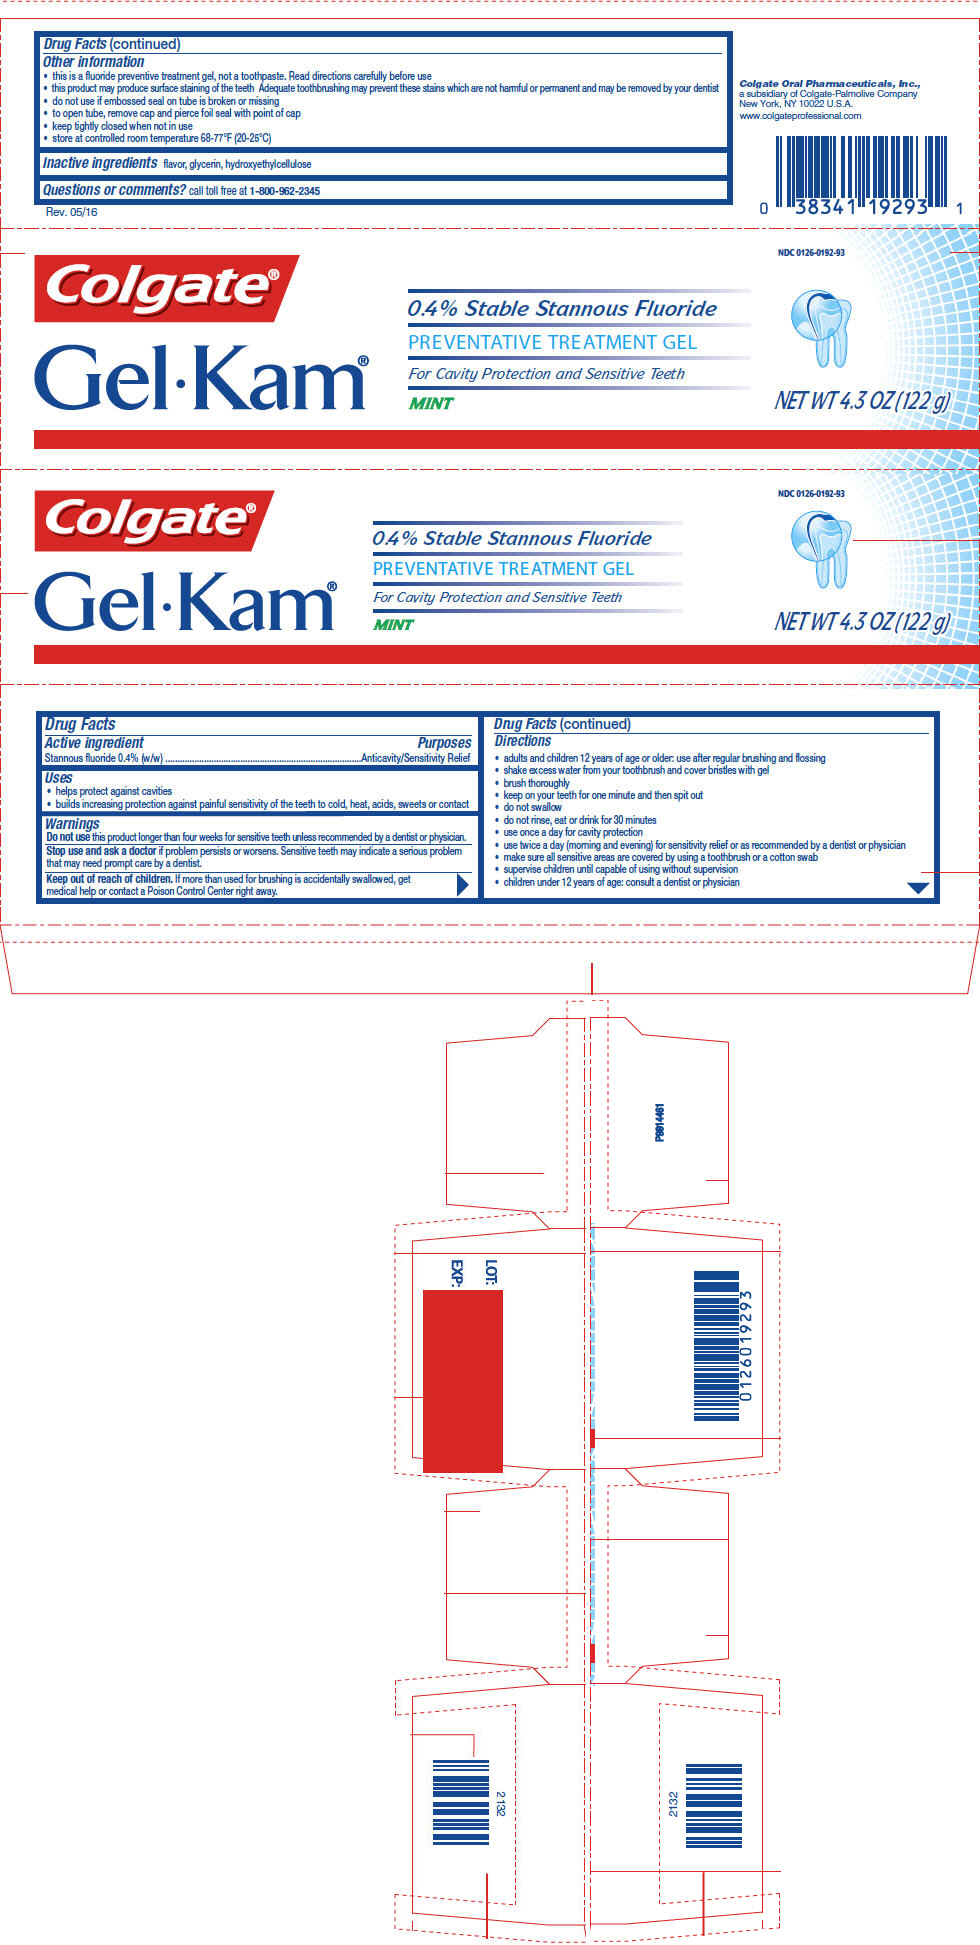 PRINCIPAL DISPLAY PANEL - 122 g Tube Carton - Mint